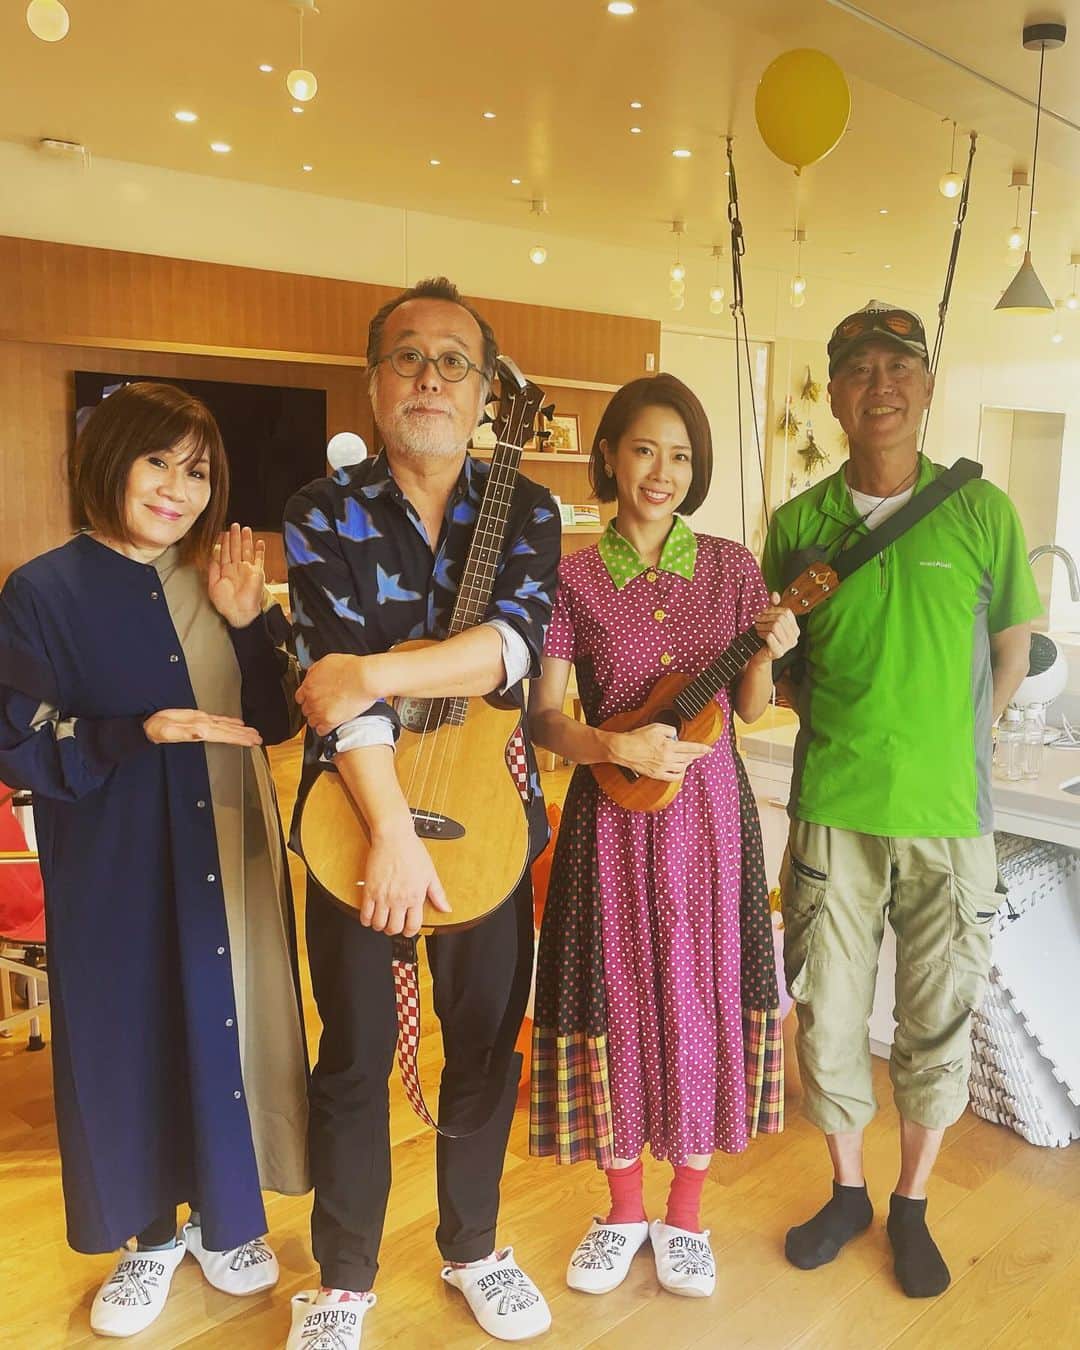 大和田美帆のインスタグラム：「昨日は 応援アンバサダーを務める #横浜こどもホスピス @yokohama_childrens_hospice   に半年ぶりに伺って 午前と午後、 小児がんや難病と闘う子どもたちと、そのご家族と一緒に楽しむ会に参加してきました！  今回は #中川ひろたかさん #YUKAさん @musicboxyuka  #シャボン玉オヤジさん @bubble_star2020   のチームで^_^  ミュージカルDADDYのご縁で、中川さんとこうしてご一緒できるようになるなんて光栄です。  ５月だったかな。 金沢から新潟のバスの中で、こどもホスピスの話をして、お誘いしたら来てくださることになり。感謝。  中川さんの名曲をたくさん歌わせていただきました。  #世界中のこどもたちが #ともだちになるために #はじめの一歩 #にじ  本当に素敵な曲ばかり。  YUKAさんと中川さんと3人でのトリオも初めてで楽しい演奏となりましたが、  途中から子ども達も楽器で参加してくれて最高のセッションになりました！  コンサートのあとは、シャボン玉オヤジさん のシャボン玉で大人も子どもも遊んで  もちろん私も大はしゃぎ。笑 子どもたちのあとに、私もシャボン玉の中に入れてもらいました！  シャボン玉も音楽も、 一瞬で子どもたちを笑顔にしちゃいます。  本当に笑い声の絶えない幸せな時間となりました。  【こどもホスピスとは何だろう？】  そうご興味を持たれた方はぜひ検索してみてください。 @yokohama_childrens_hospice  横浜 @tch_ins  大阪  こどもホスピスの必要性についての講演会も行っております。明日は茨城に講演してきます。  もっと多くの方に #こどもホスピス　について 知っていただけますように。  こどもたちが、 たくさん笑ってたくさん遊んでる空間は大人も笑顔です。 #こどもが笑えば世界が笑う ！！！  エネルギーをいっぱいもらいました！！」